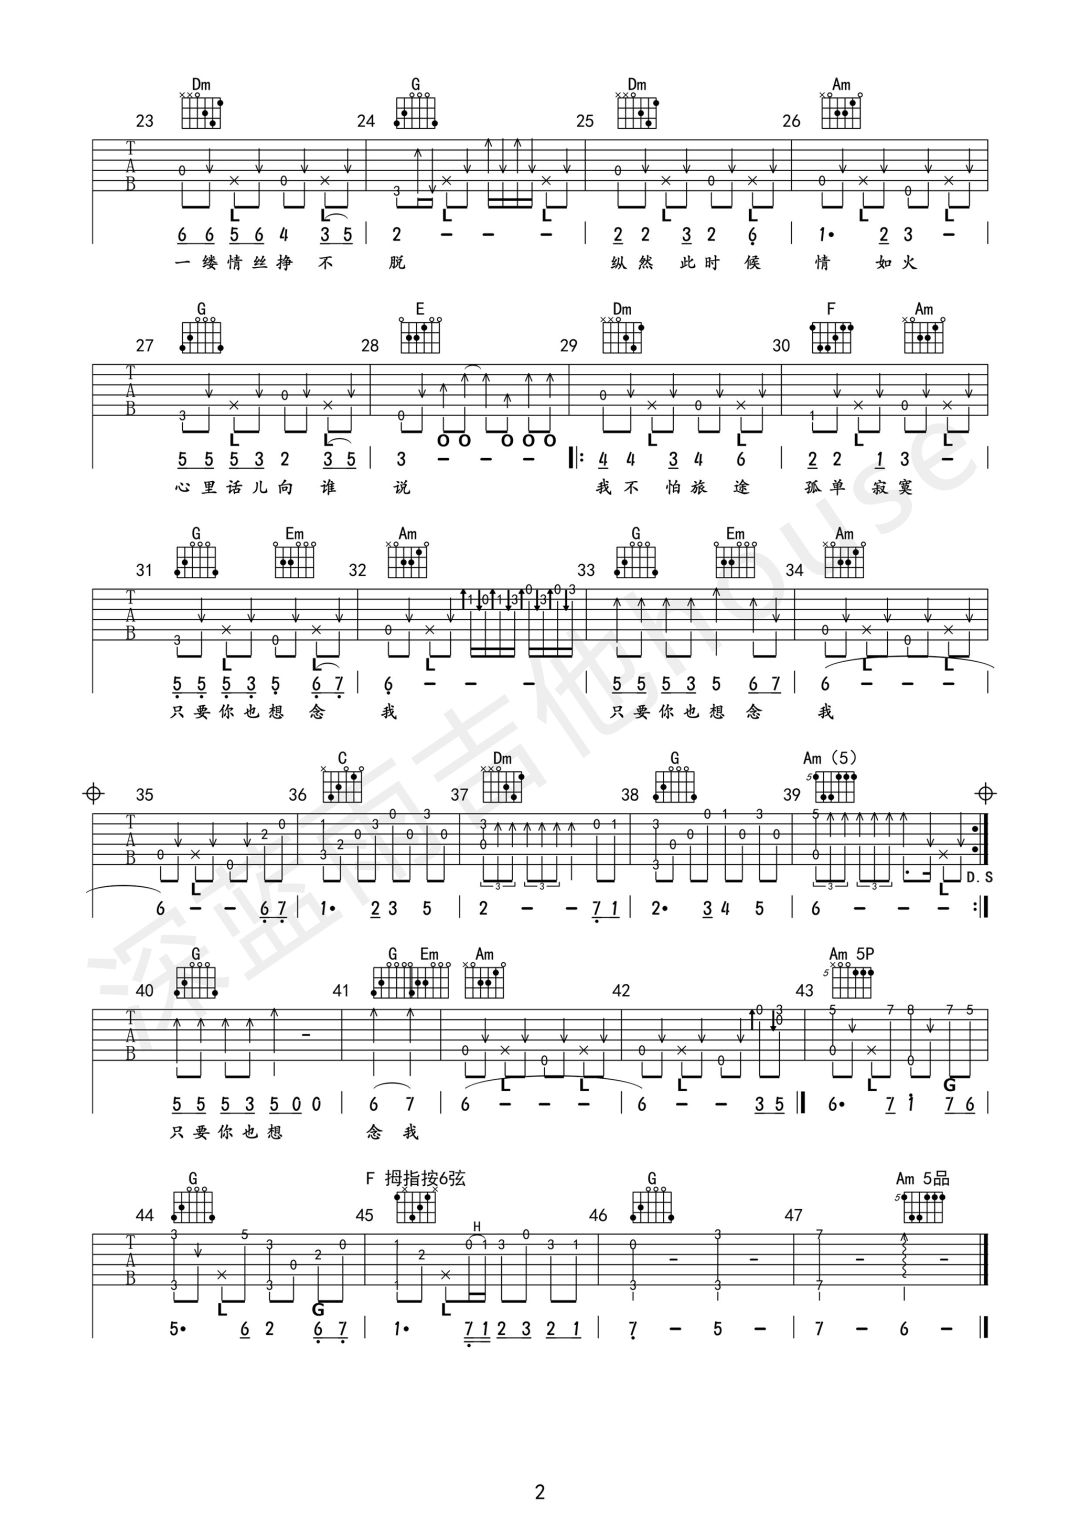 翁素英,陈鸿宇《人在旅途》吉他谱(C调)-Guitar Music Score